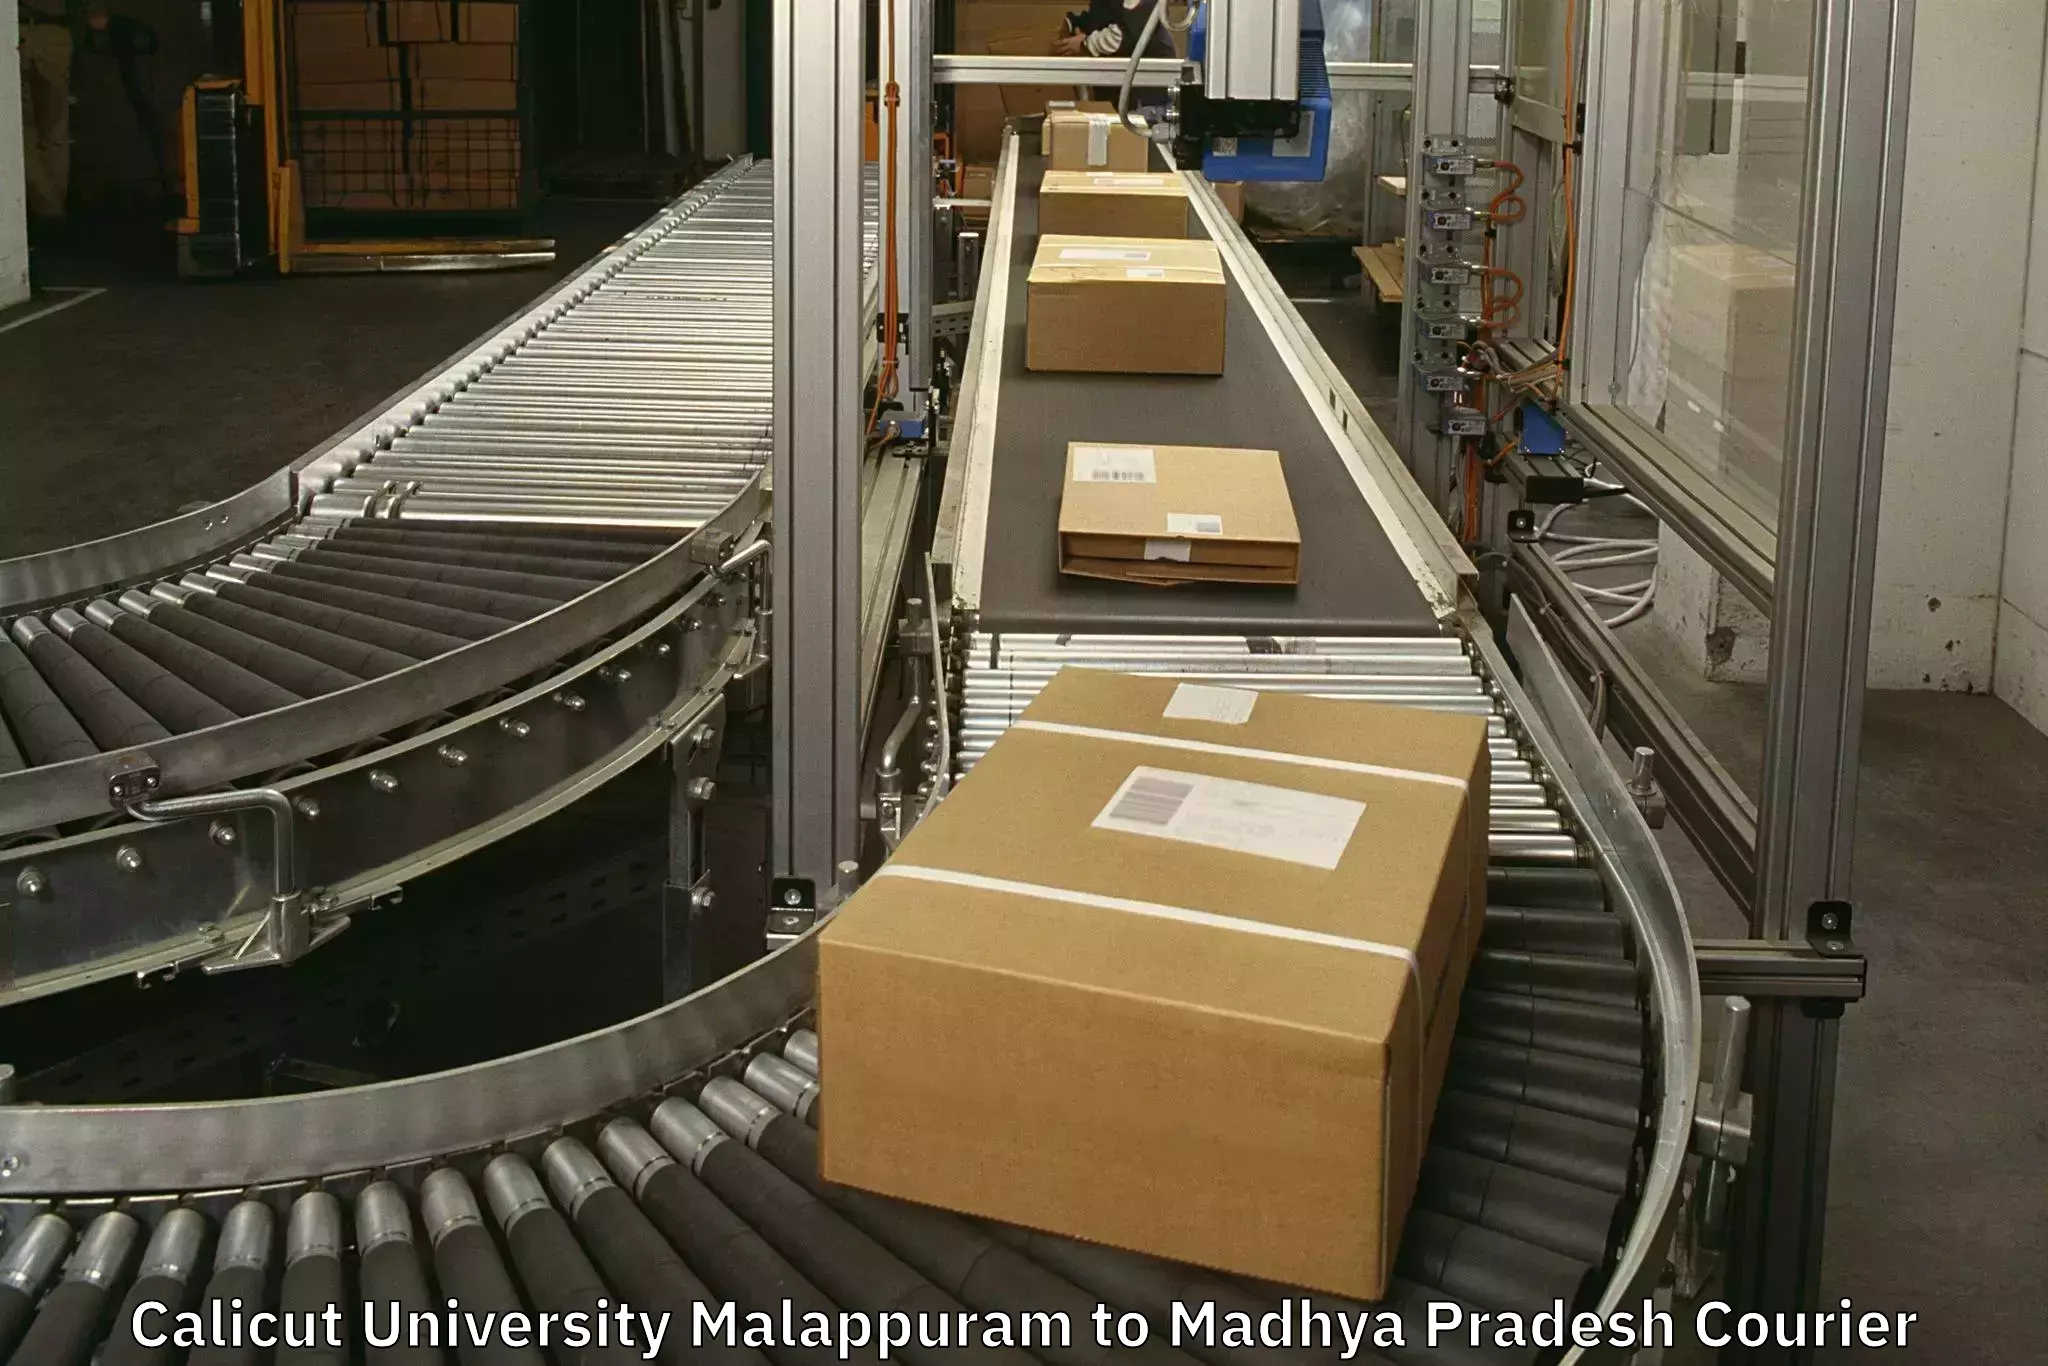 Luggage courier network Calicut University Malappuram to Mandla